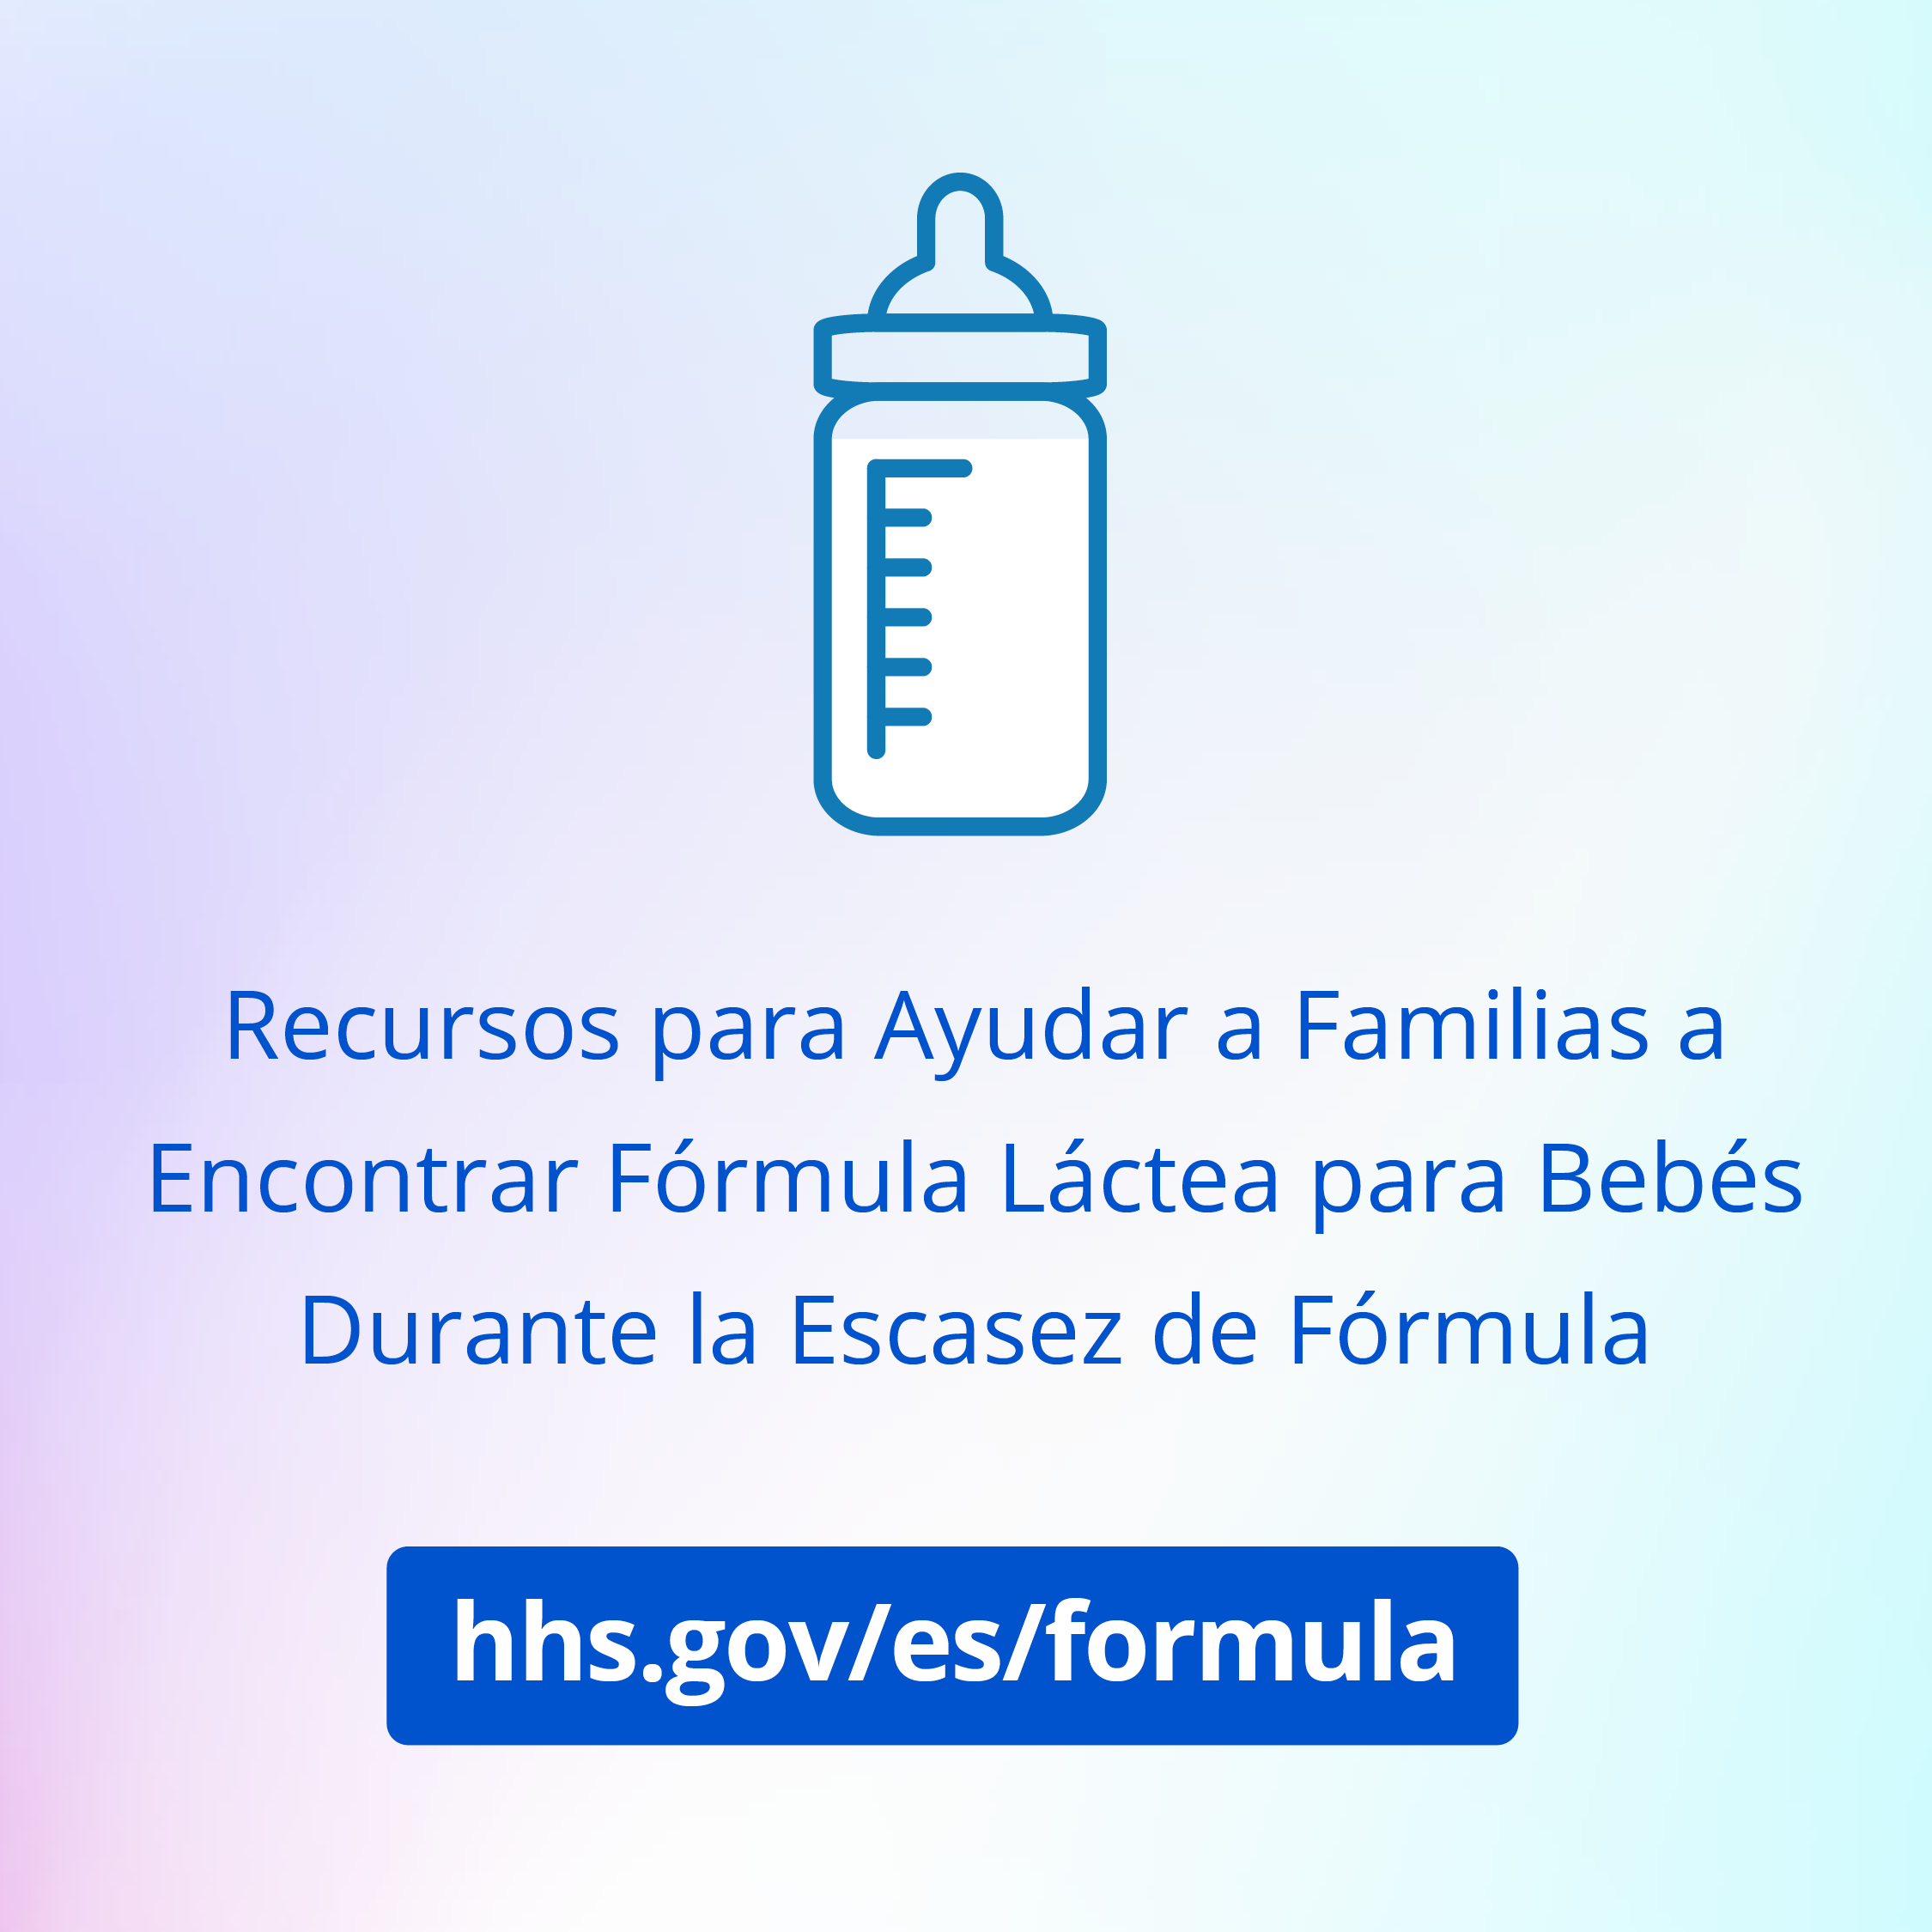 Gráfico promocional de Instagram para buscar recursos para la falta de fórmula infantil en hhs.gov/formula en inglés.